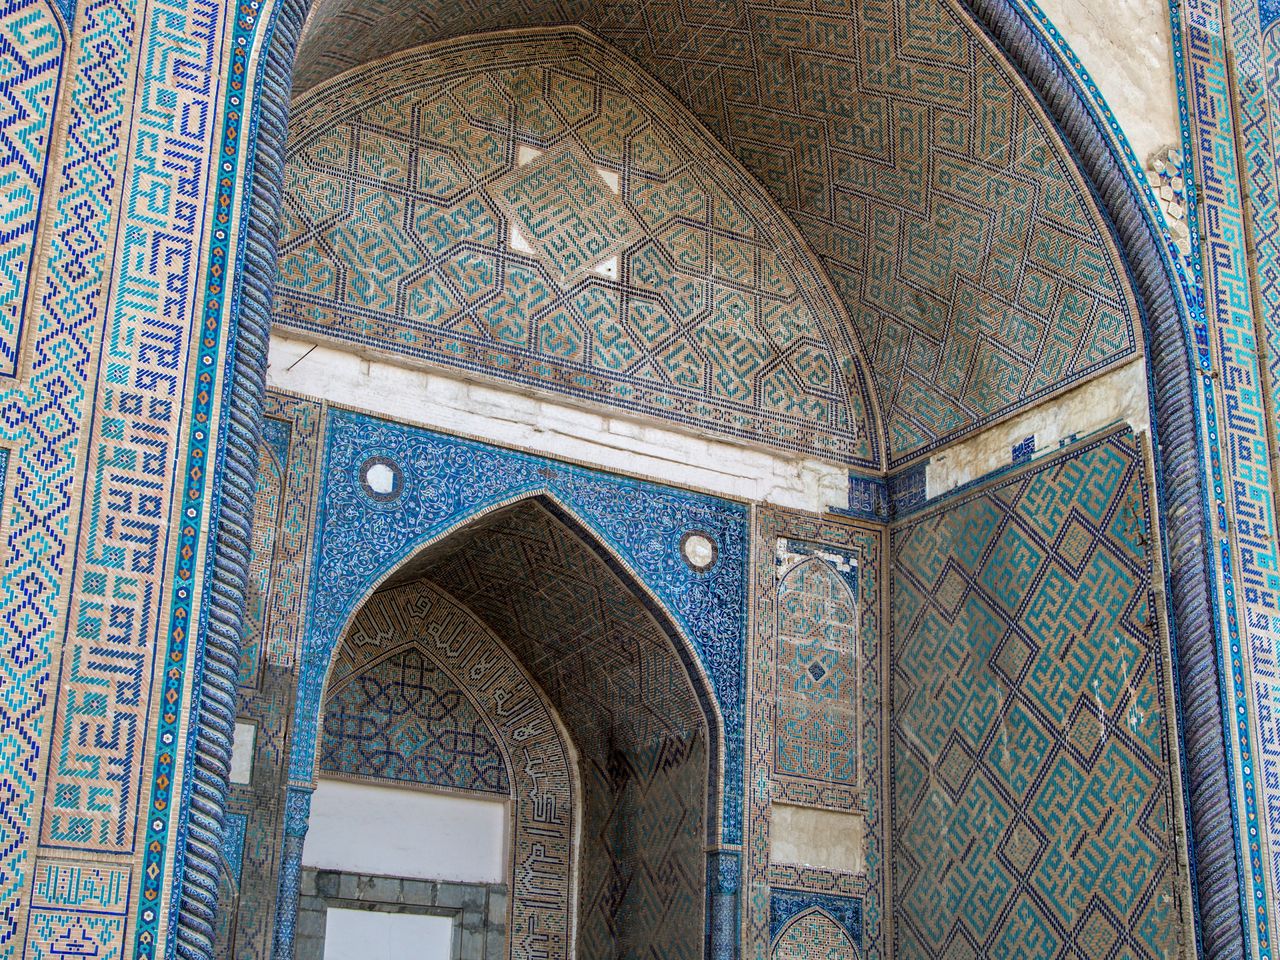 Ремесленный тур "Оч. умелые ручки по-узбекски" | Цена 140€, отзывы, описание экскурсии